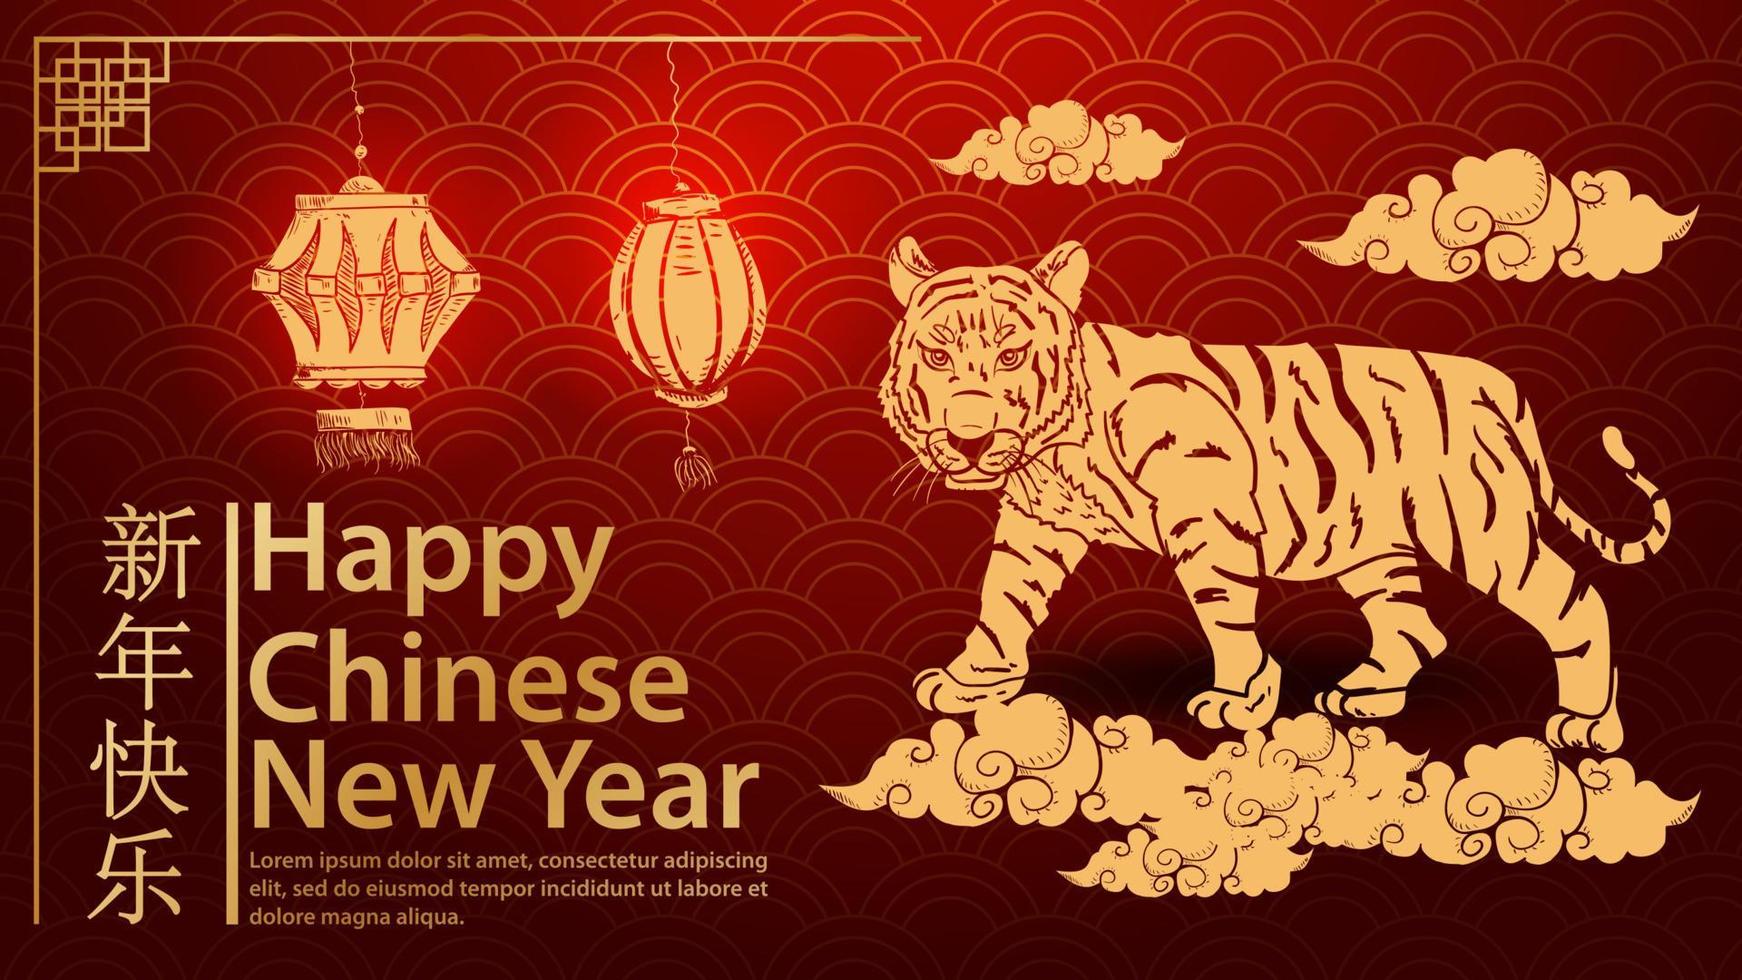 una piccola tigre cammina tra le nuvole il simbolo del capodanno cinese e l'iscrizione congratulazioni sfondo rosso onda vettore